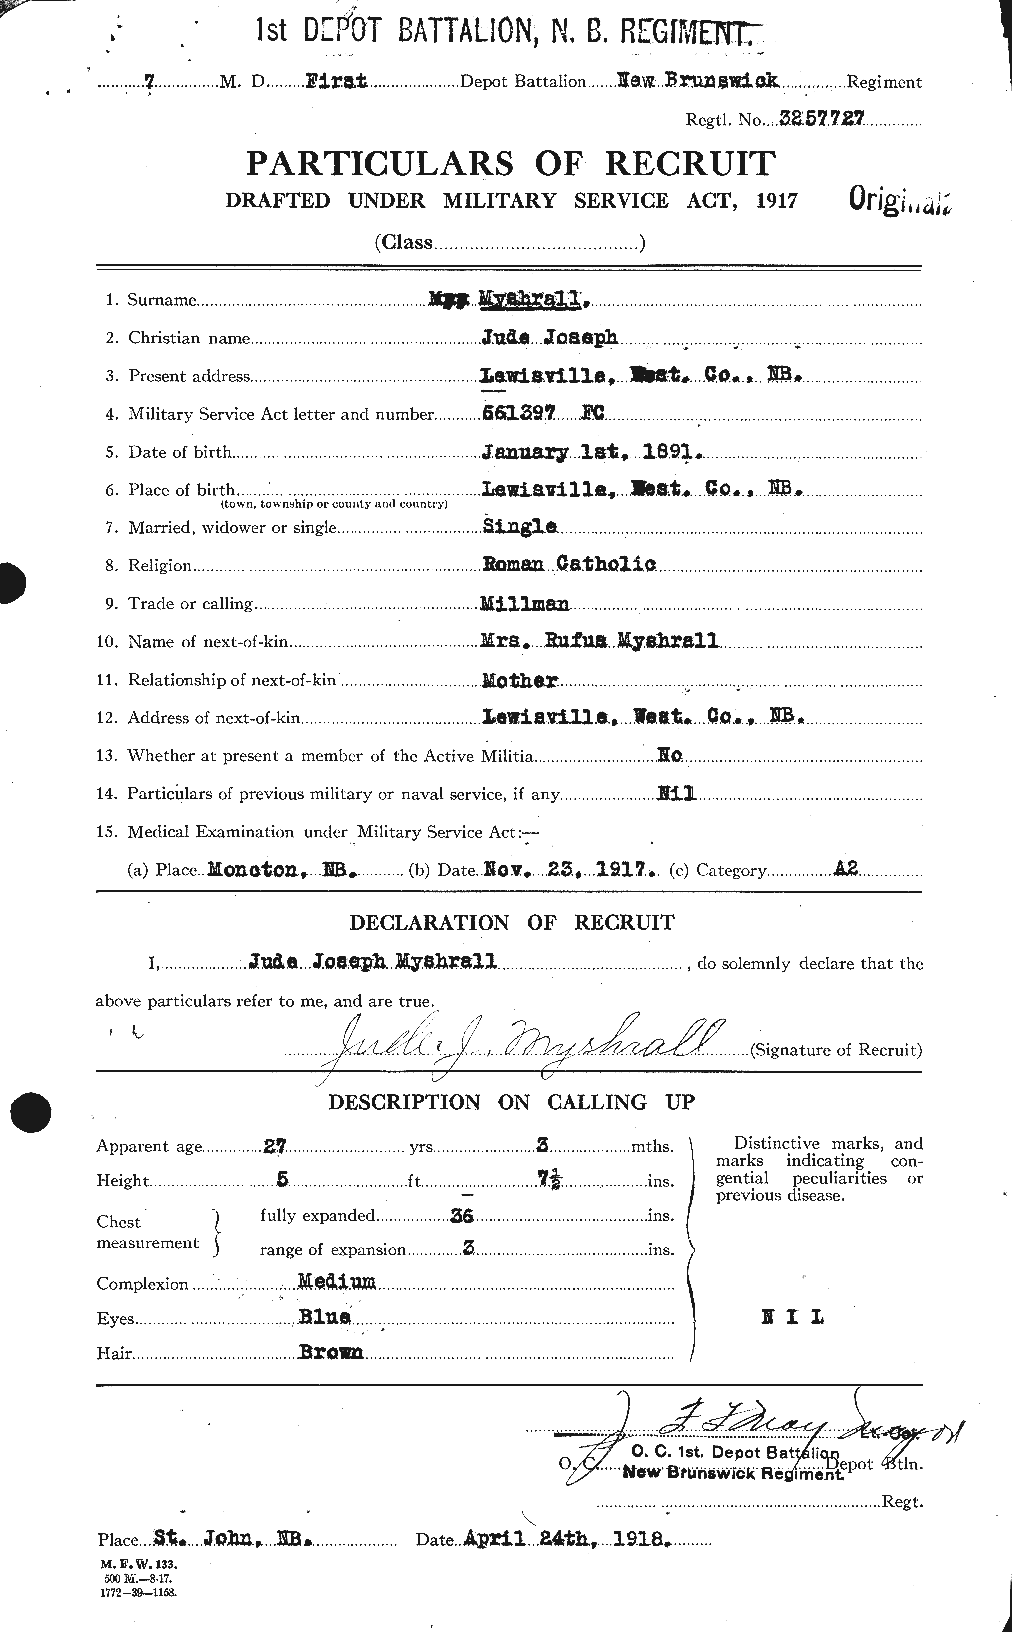 Dossiers du Personnel de la Première Guerre mondiale - CEC 518054a